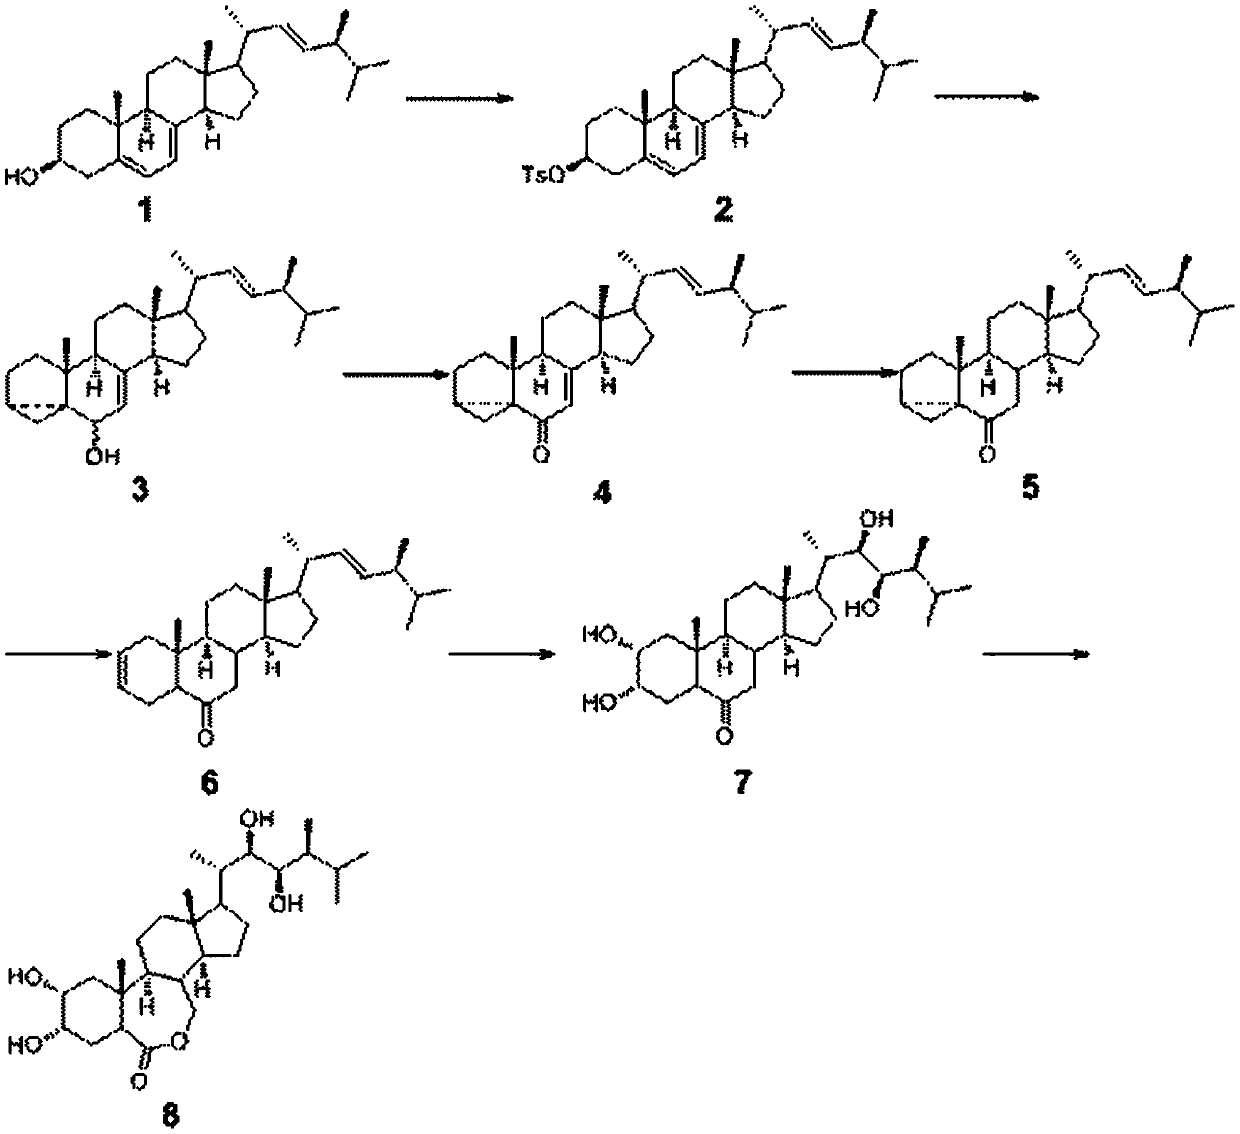 Method for synthesizing 24-epibrassinolide